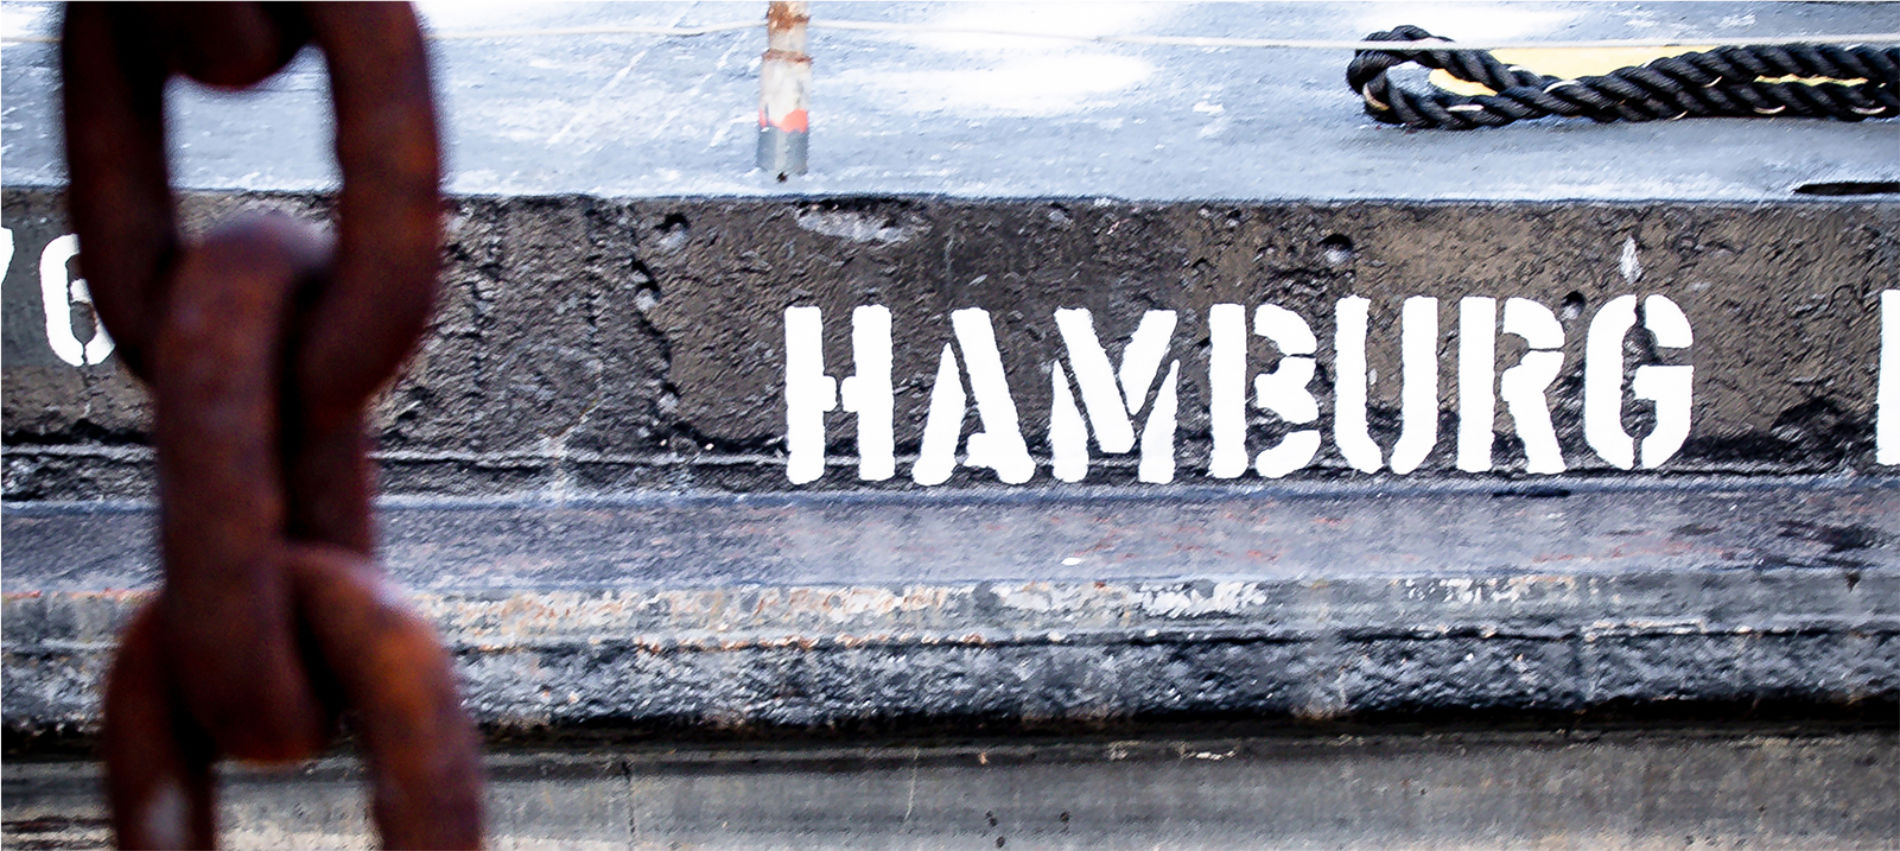 Neptunsgeschmeide Kategorie Hamburg Hero Bild. Hafenkante mit Aufschrift Hamburg.